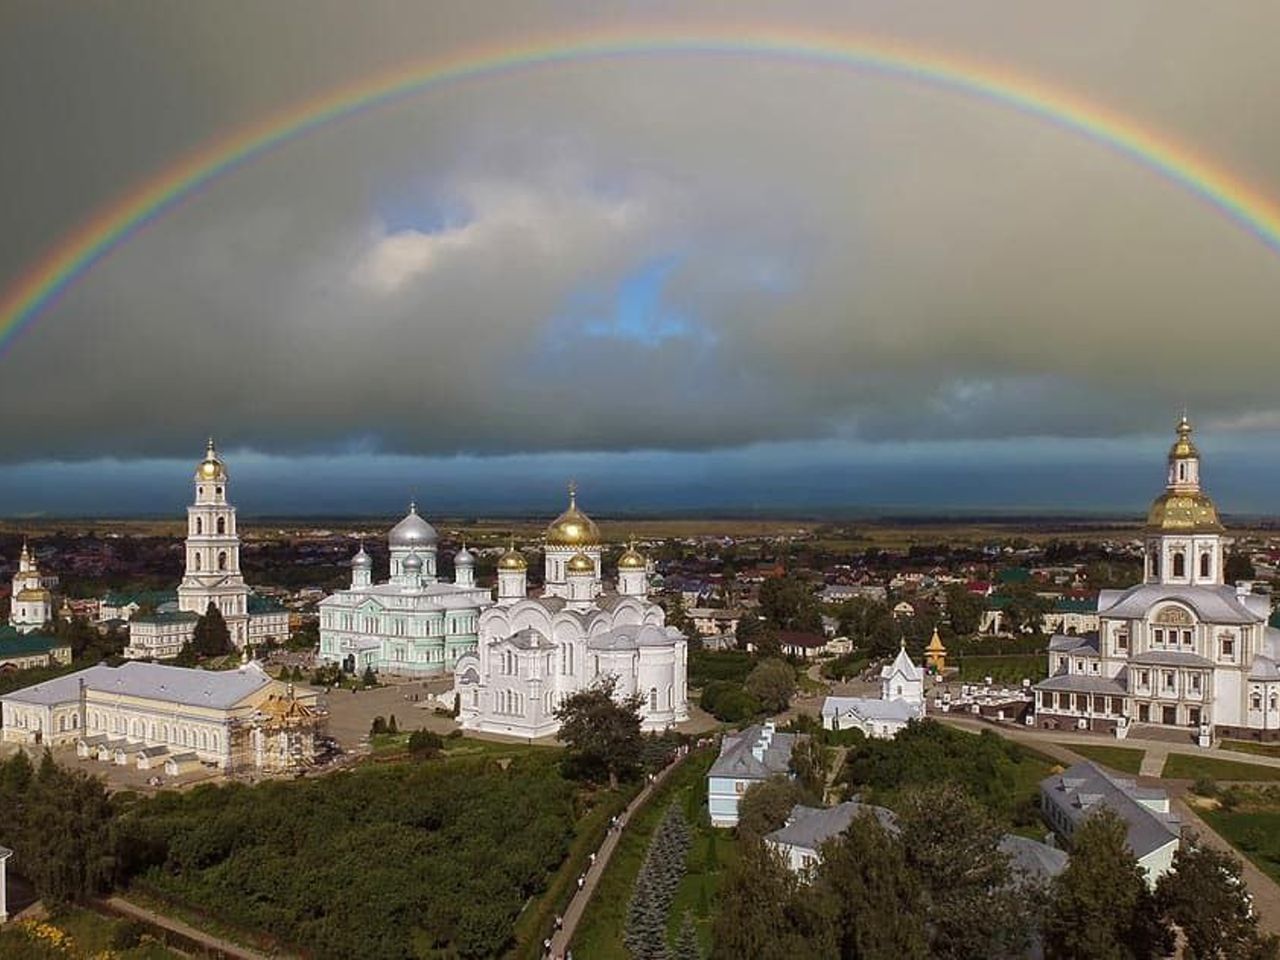 Дивеево – православный центр России | Цена 16250₽, отзывы, описание экскурсии